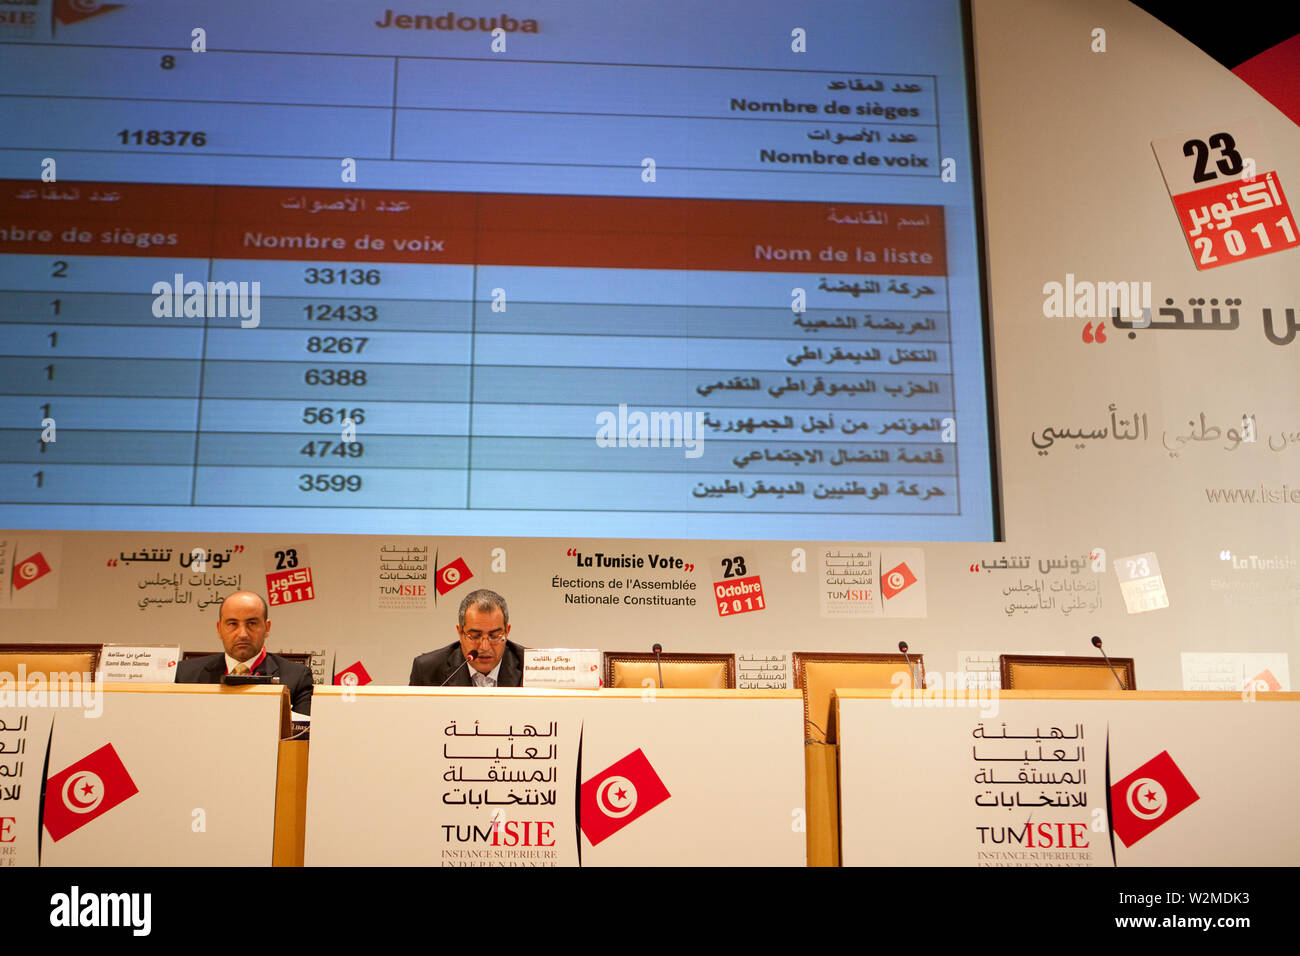 25 octobre 2011 - Tunis, Tunisie - les fonctionnaires à l'ISIE Media Center dans le centre de Tunis a annoncé les résultats préliminaires des élections lors d'une conférence de presse. Crédit photo : Benedicte Desrus Banque D'Images